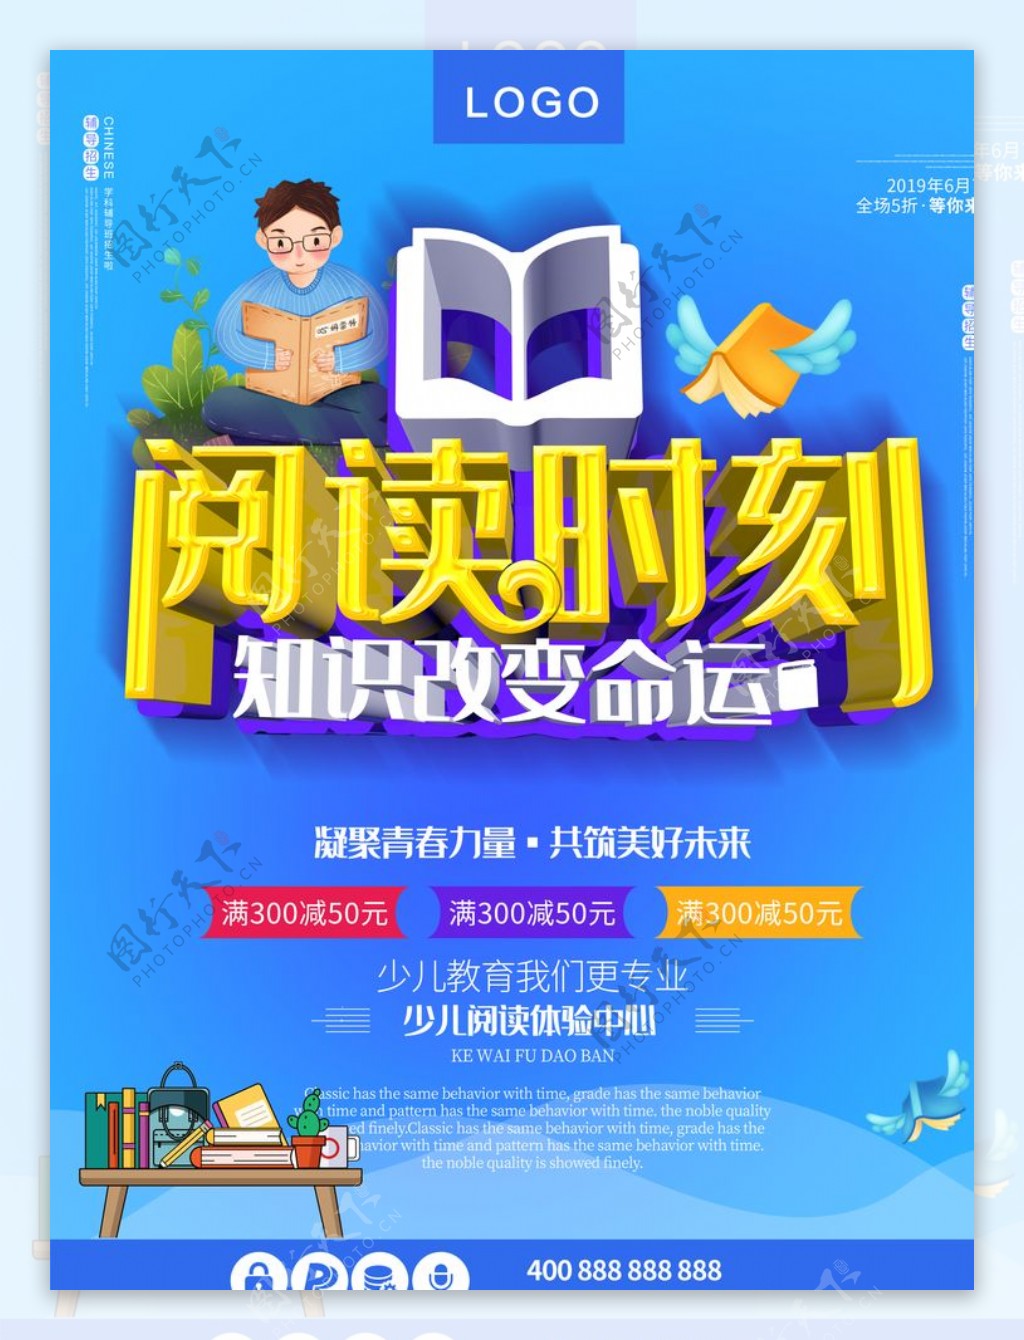 如何找回深度阅读的乐趣 - FT中文网